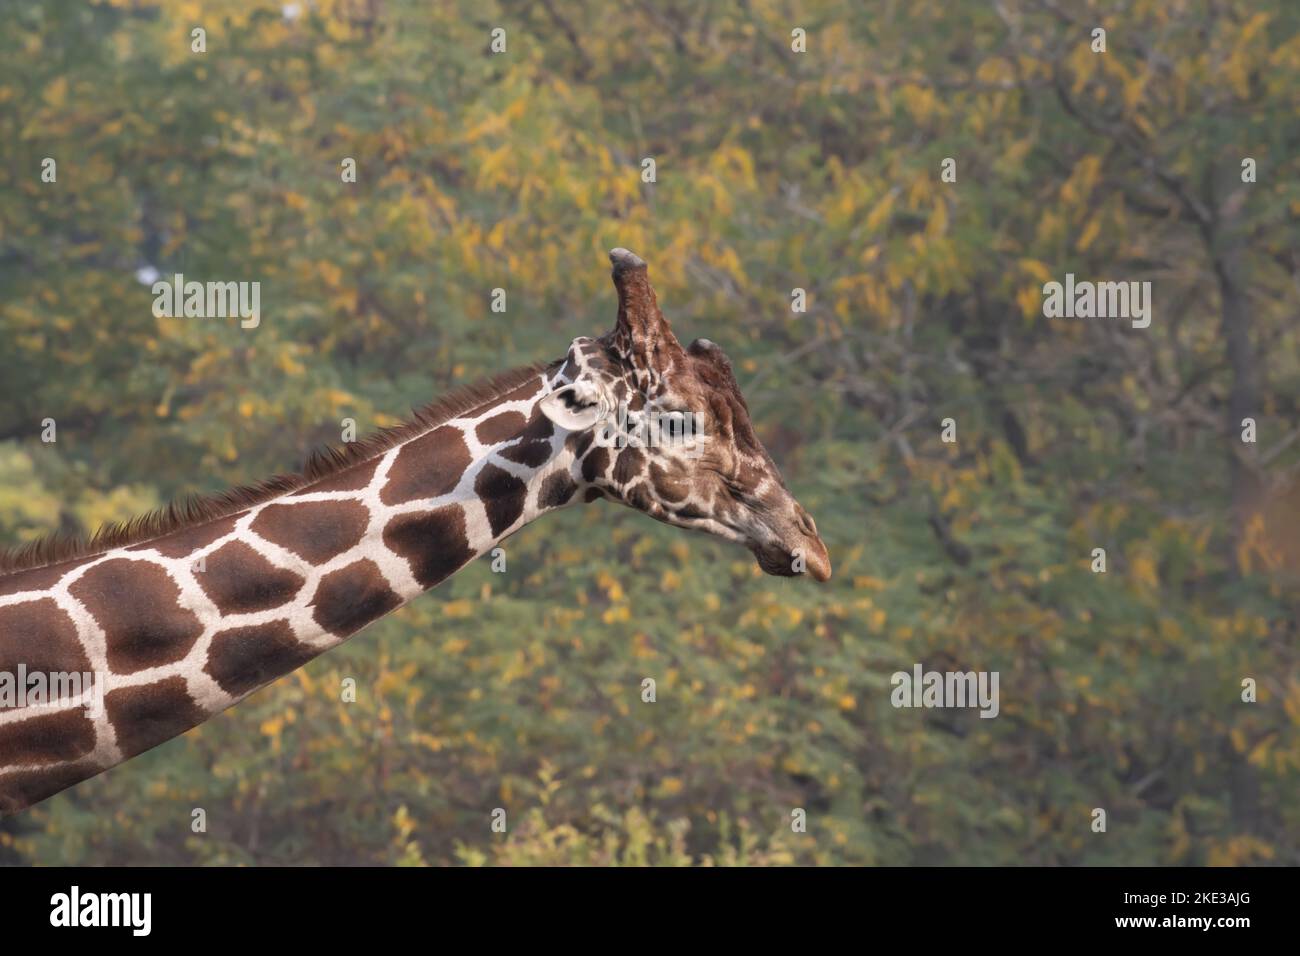 Girafe contre les arbres Banque D'Images